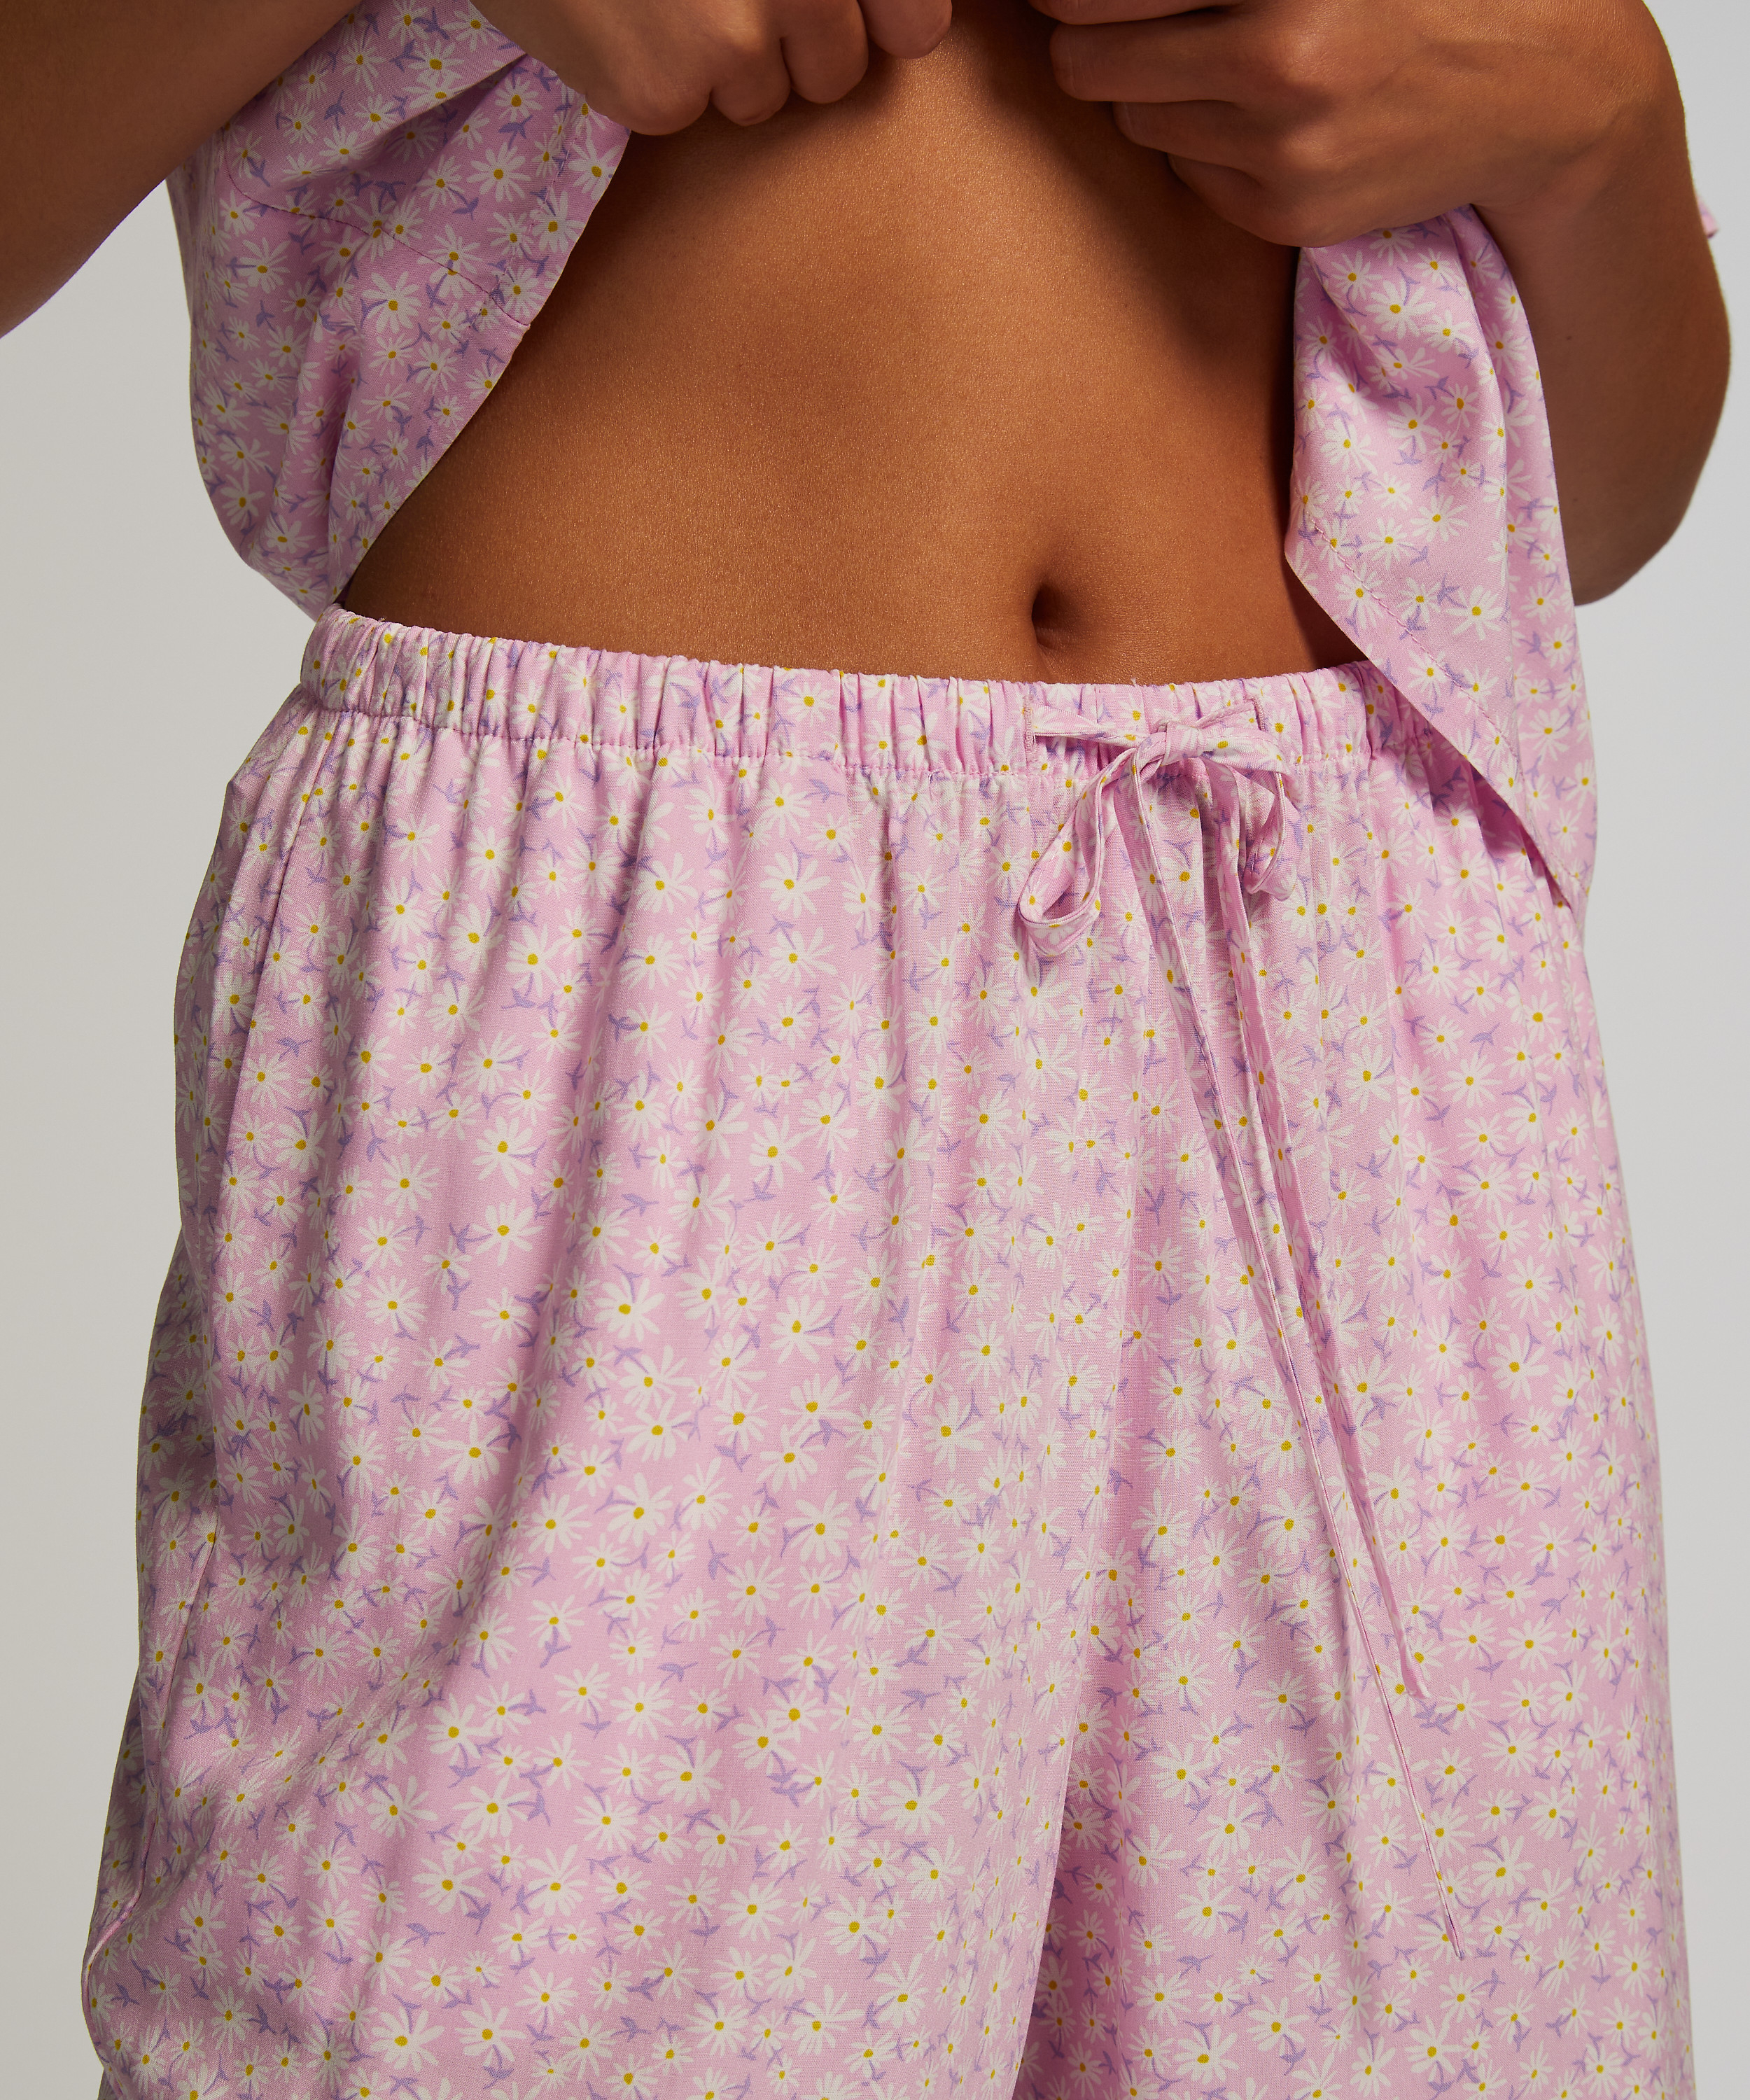 Pantalón de pijama tejido Springbreakers, Rosa, main